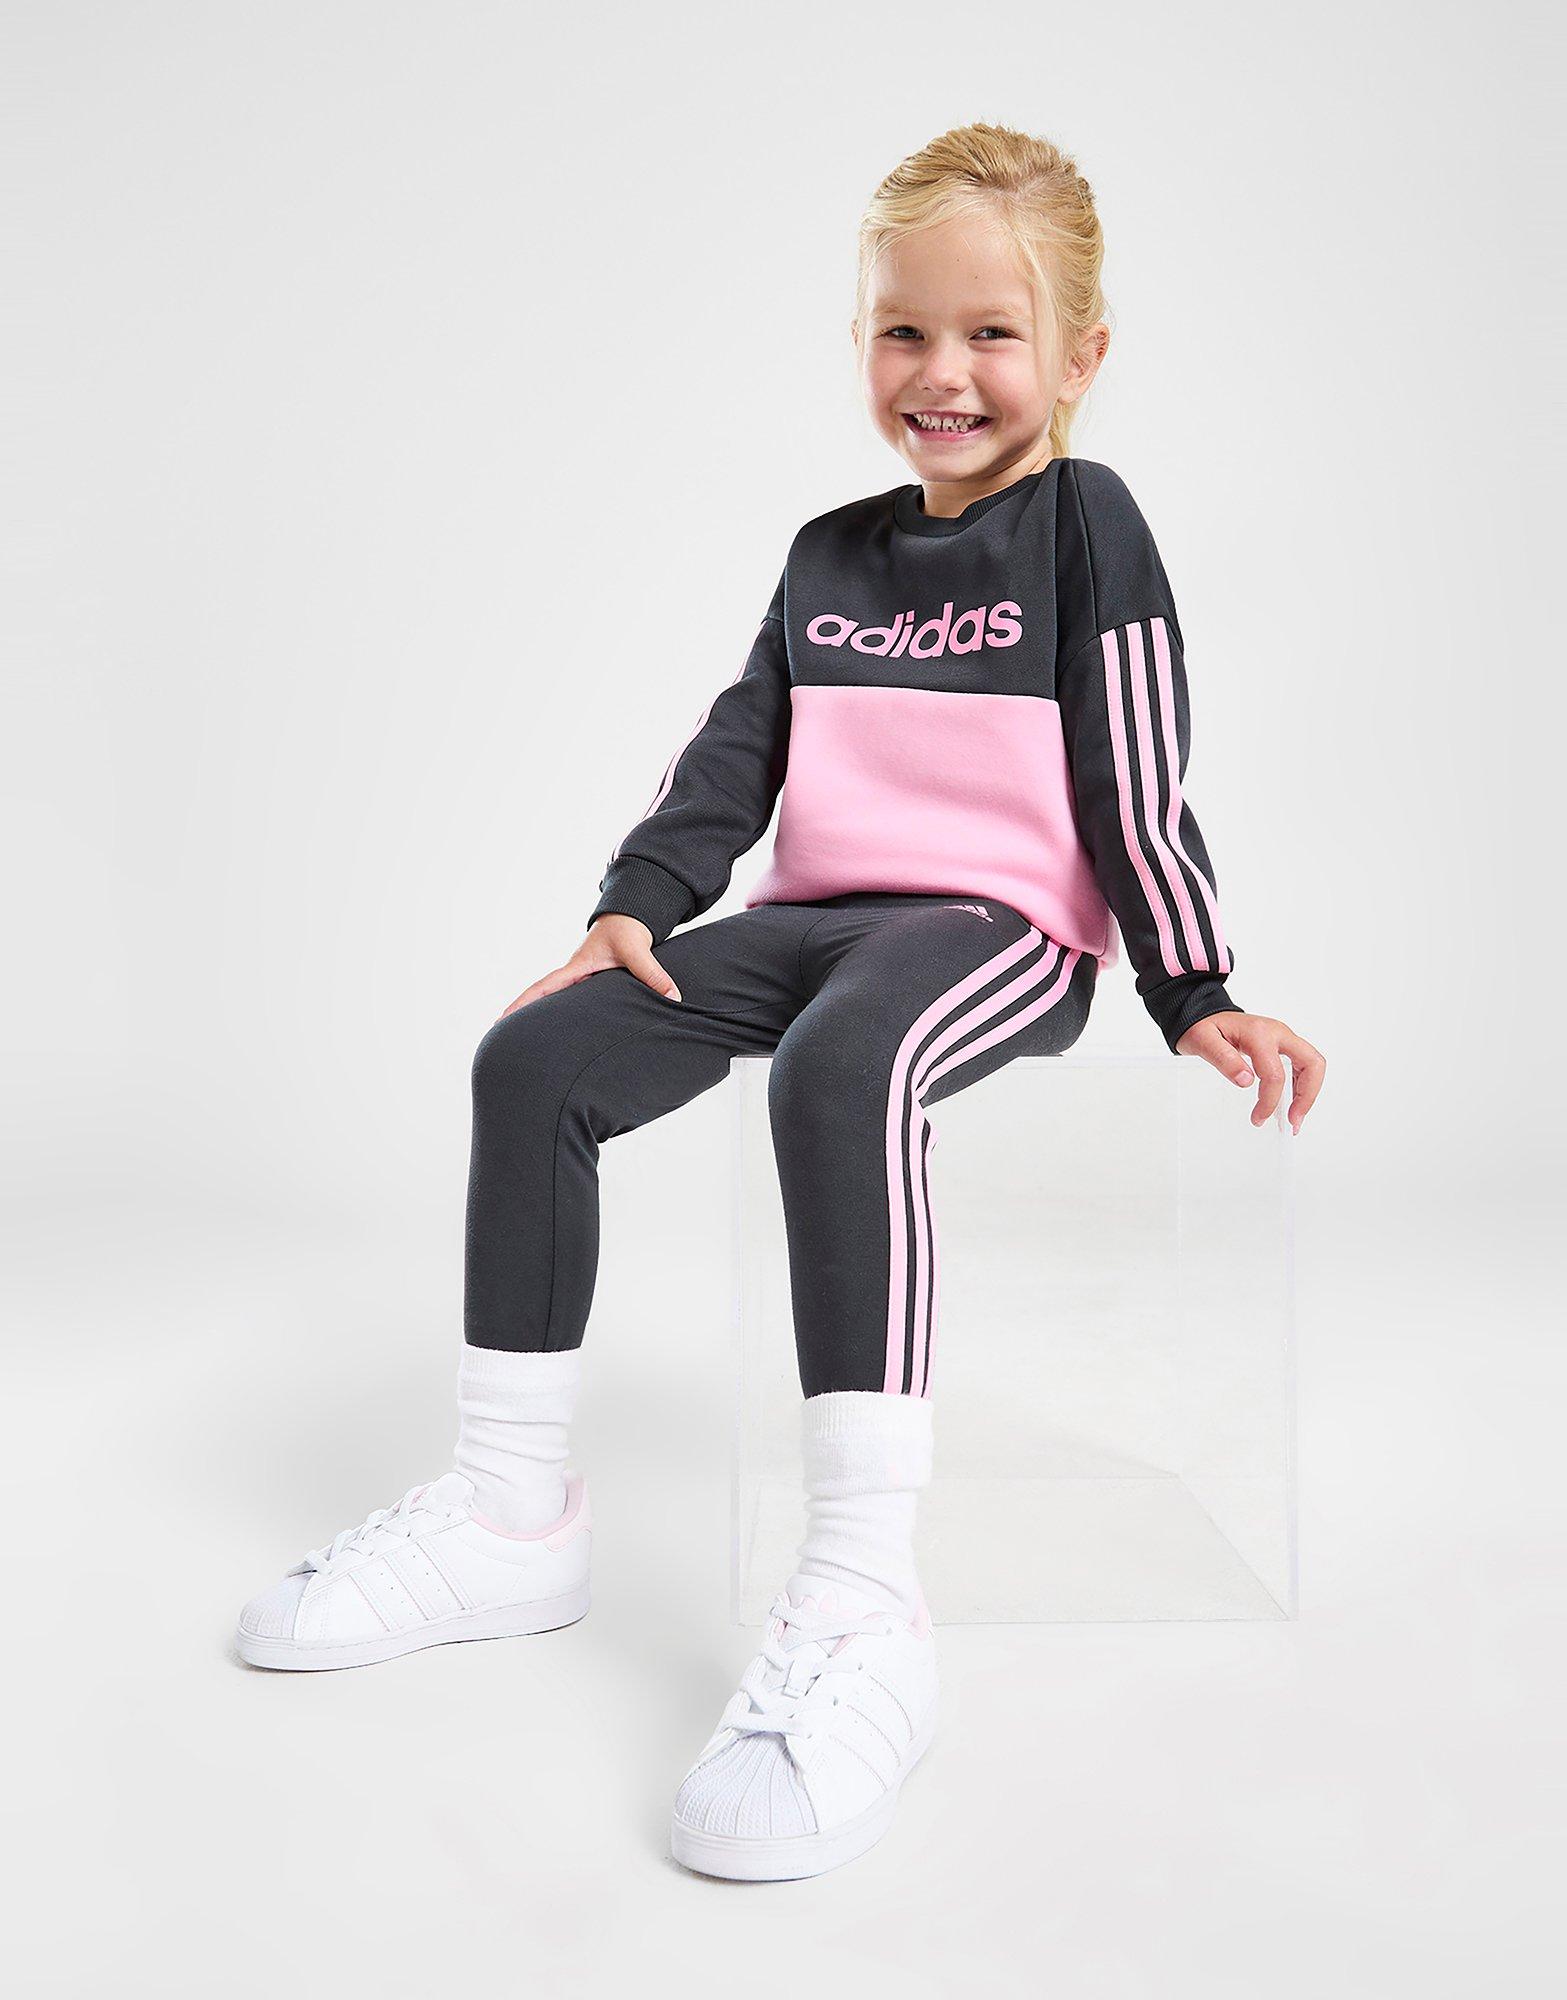 Enfant - Adidas Vêtements Bébé (0-3 ans) - JD Sports France